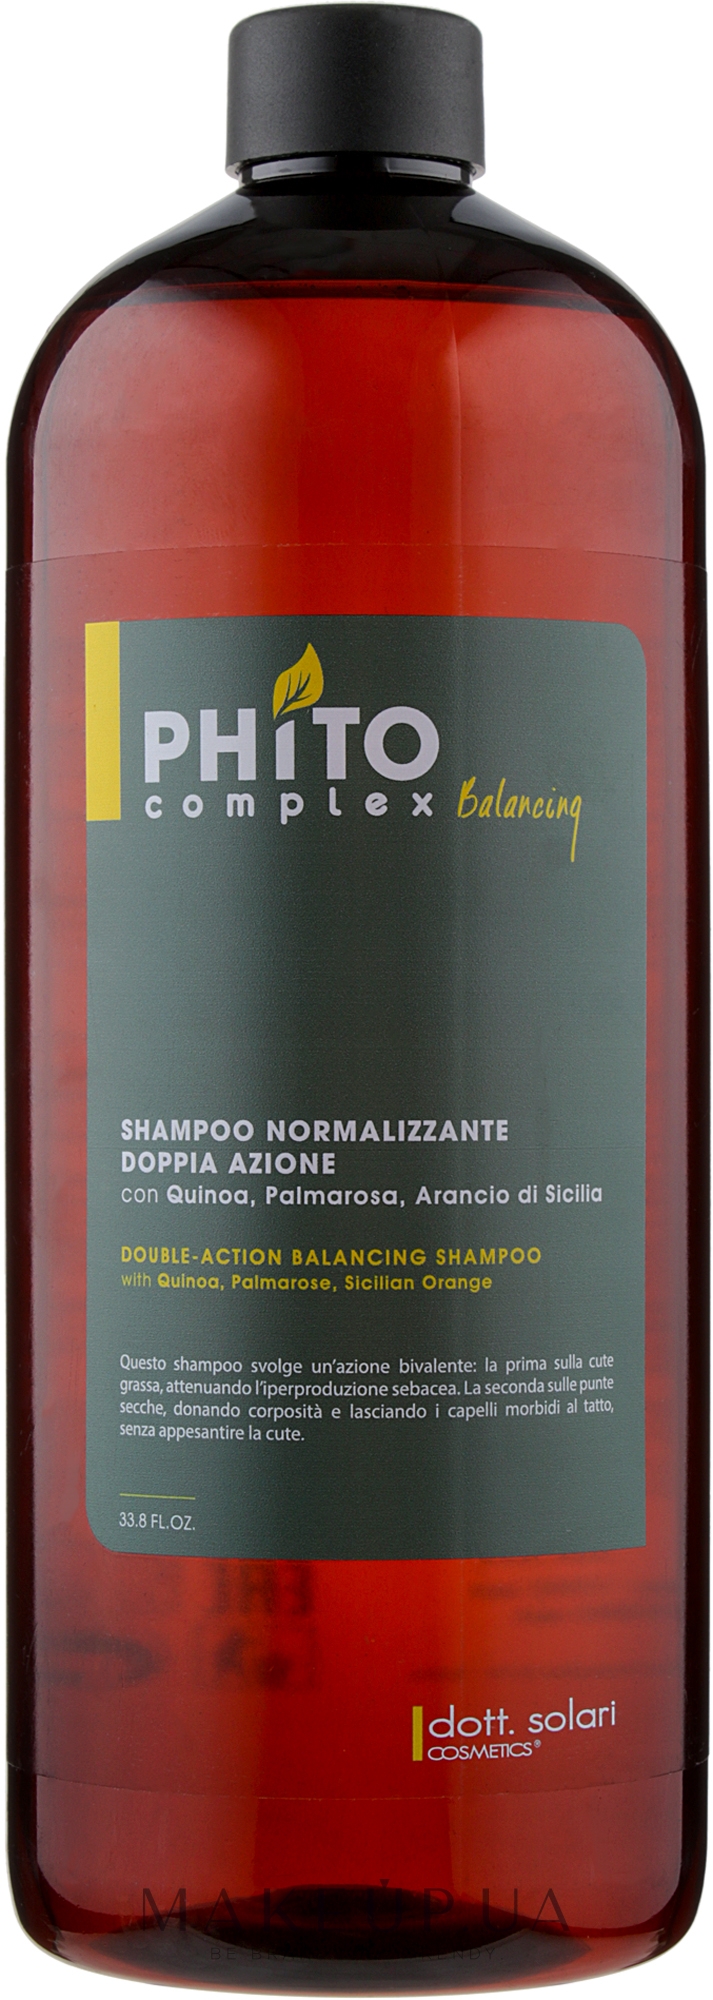 Балансирующий шампунь для волос двойного действия - Dott. Solari Phito Complex Balancing Double-Action Shampoo — фото 1000ml